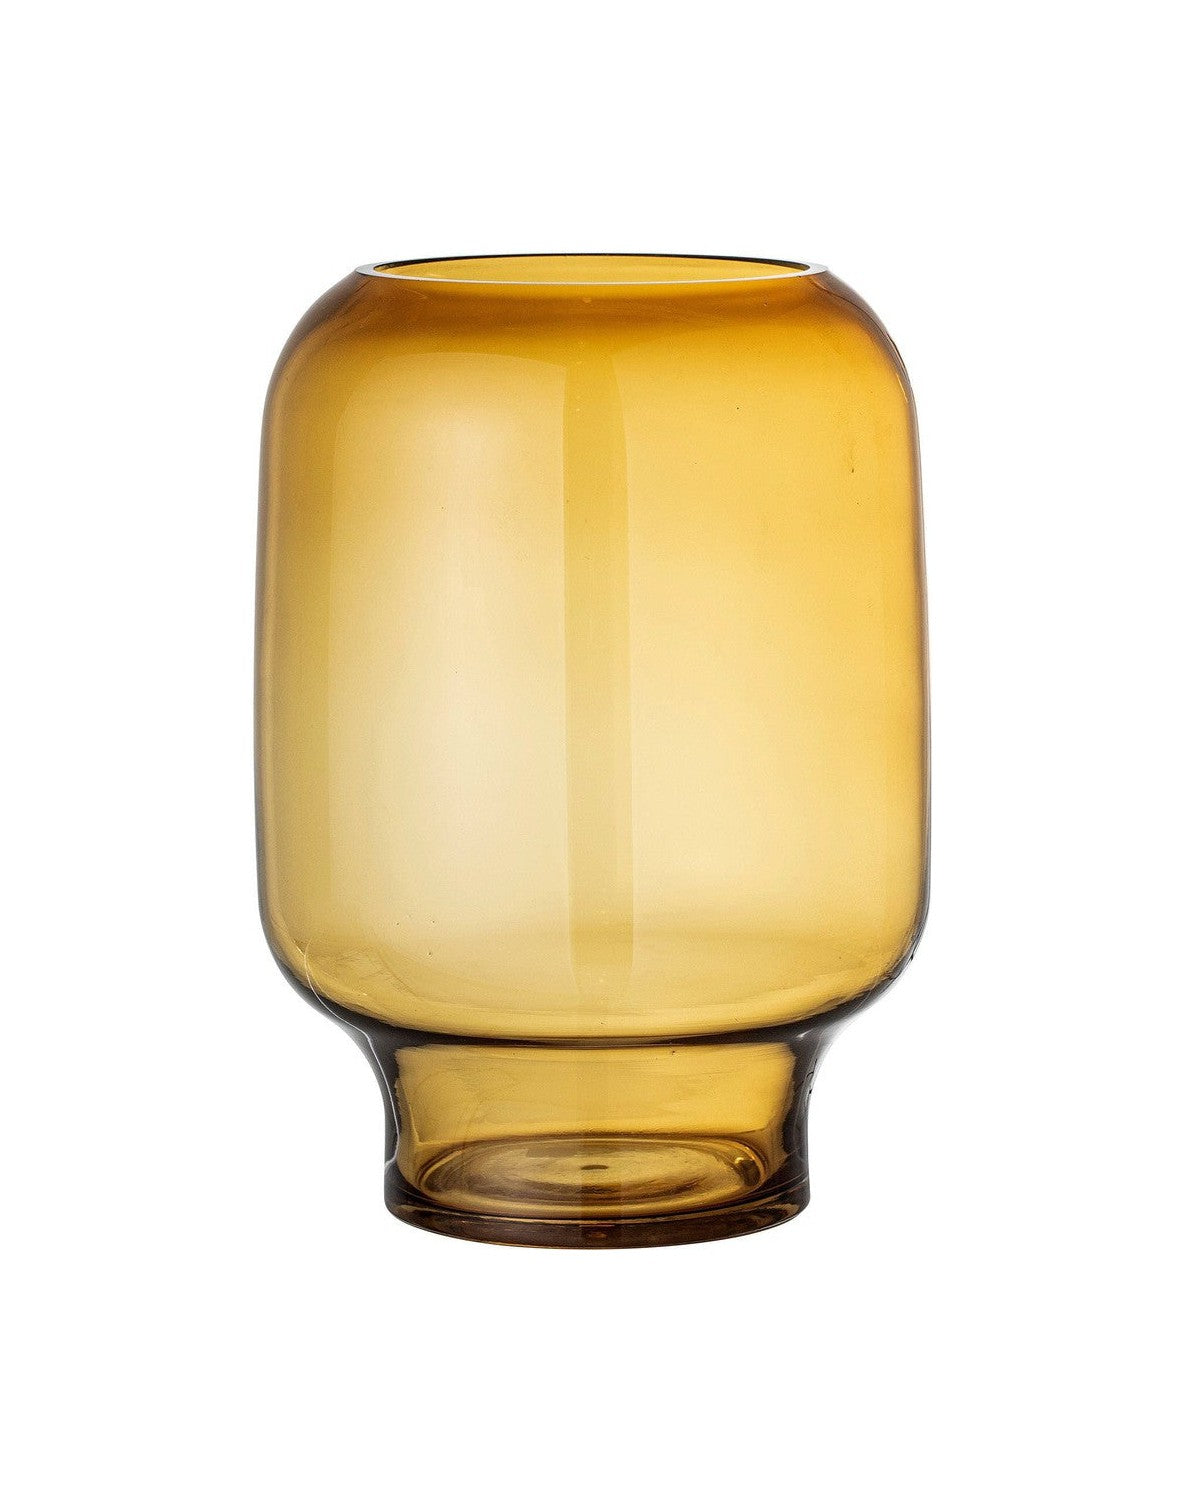 Bloomingville Adine Vase, Yellow, Glass